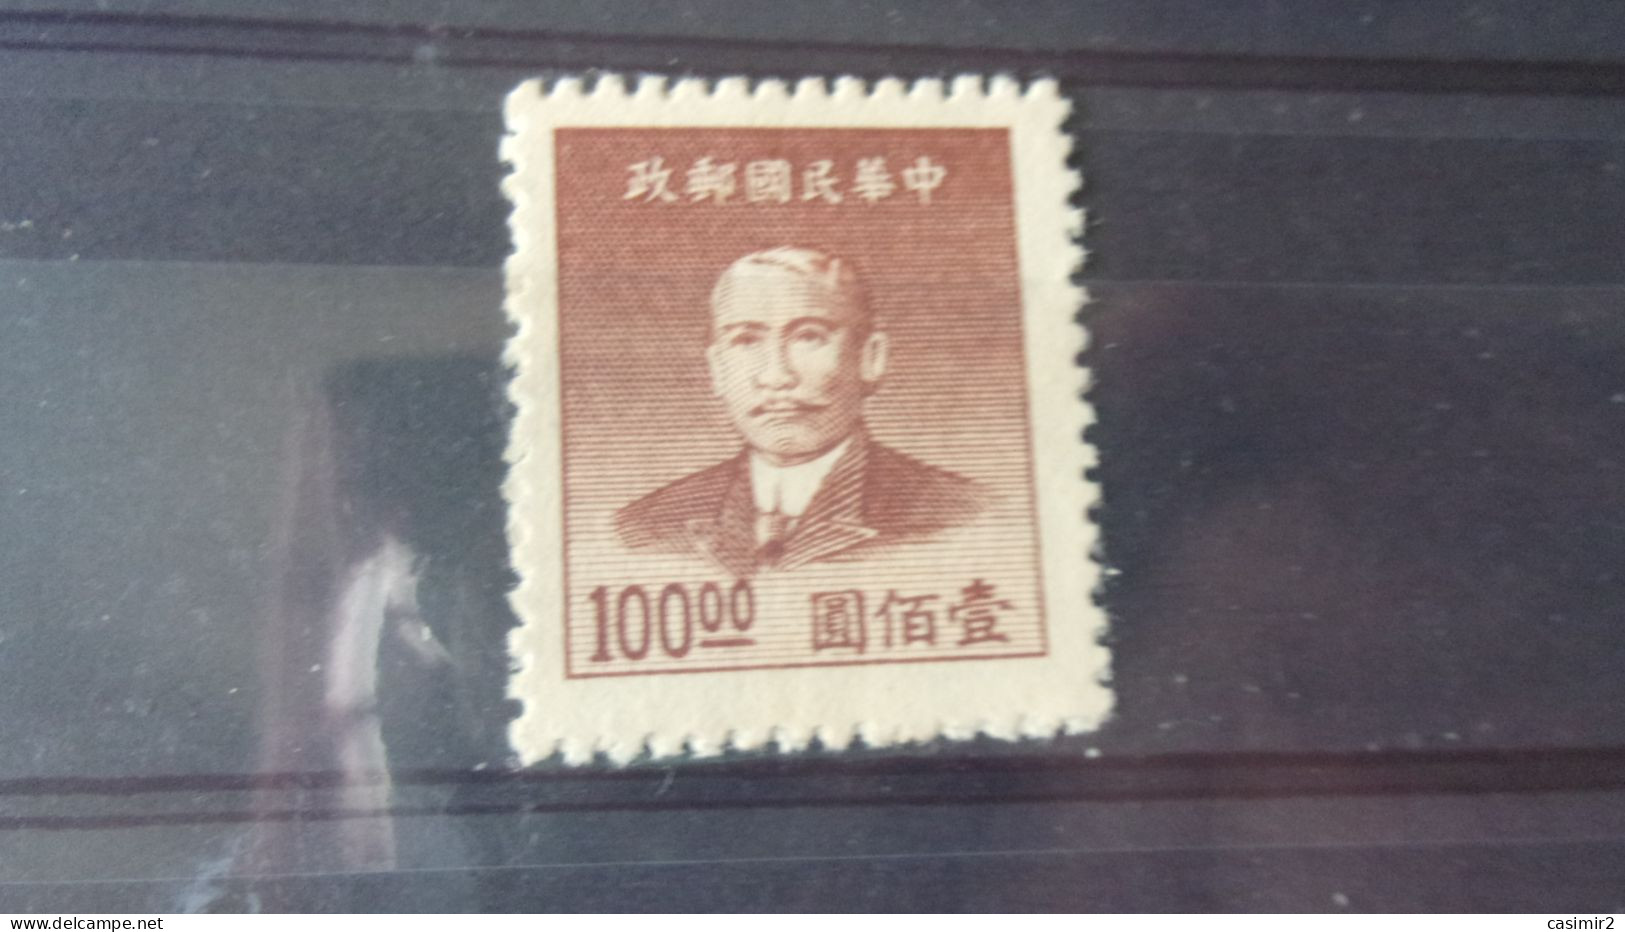 CHINE   YVERT N° 725 - 1912-1949 Republiek